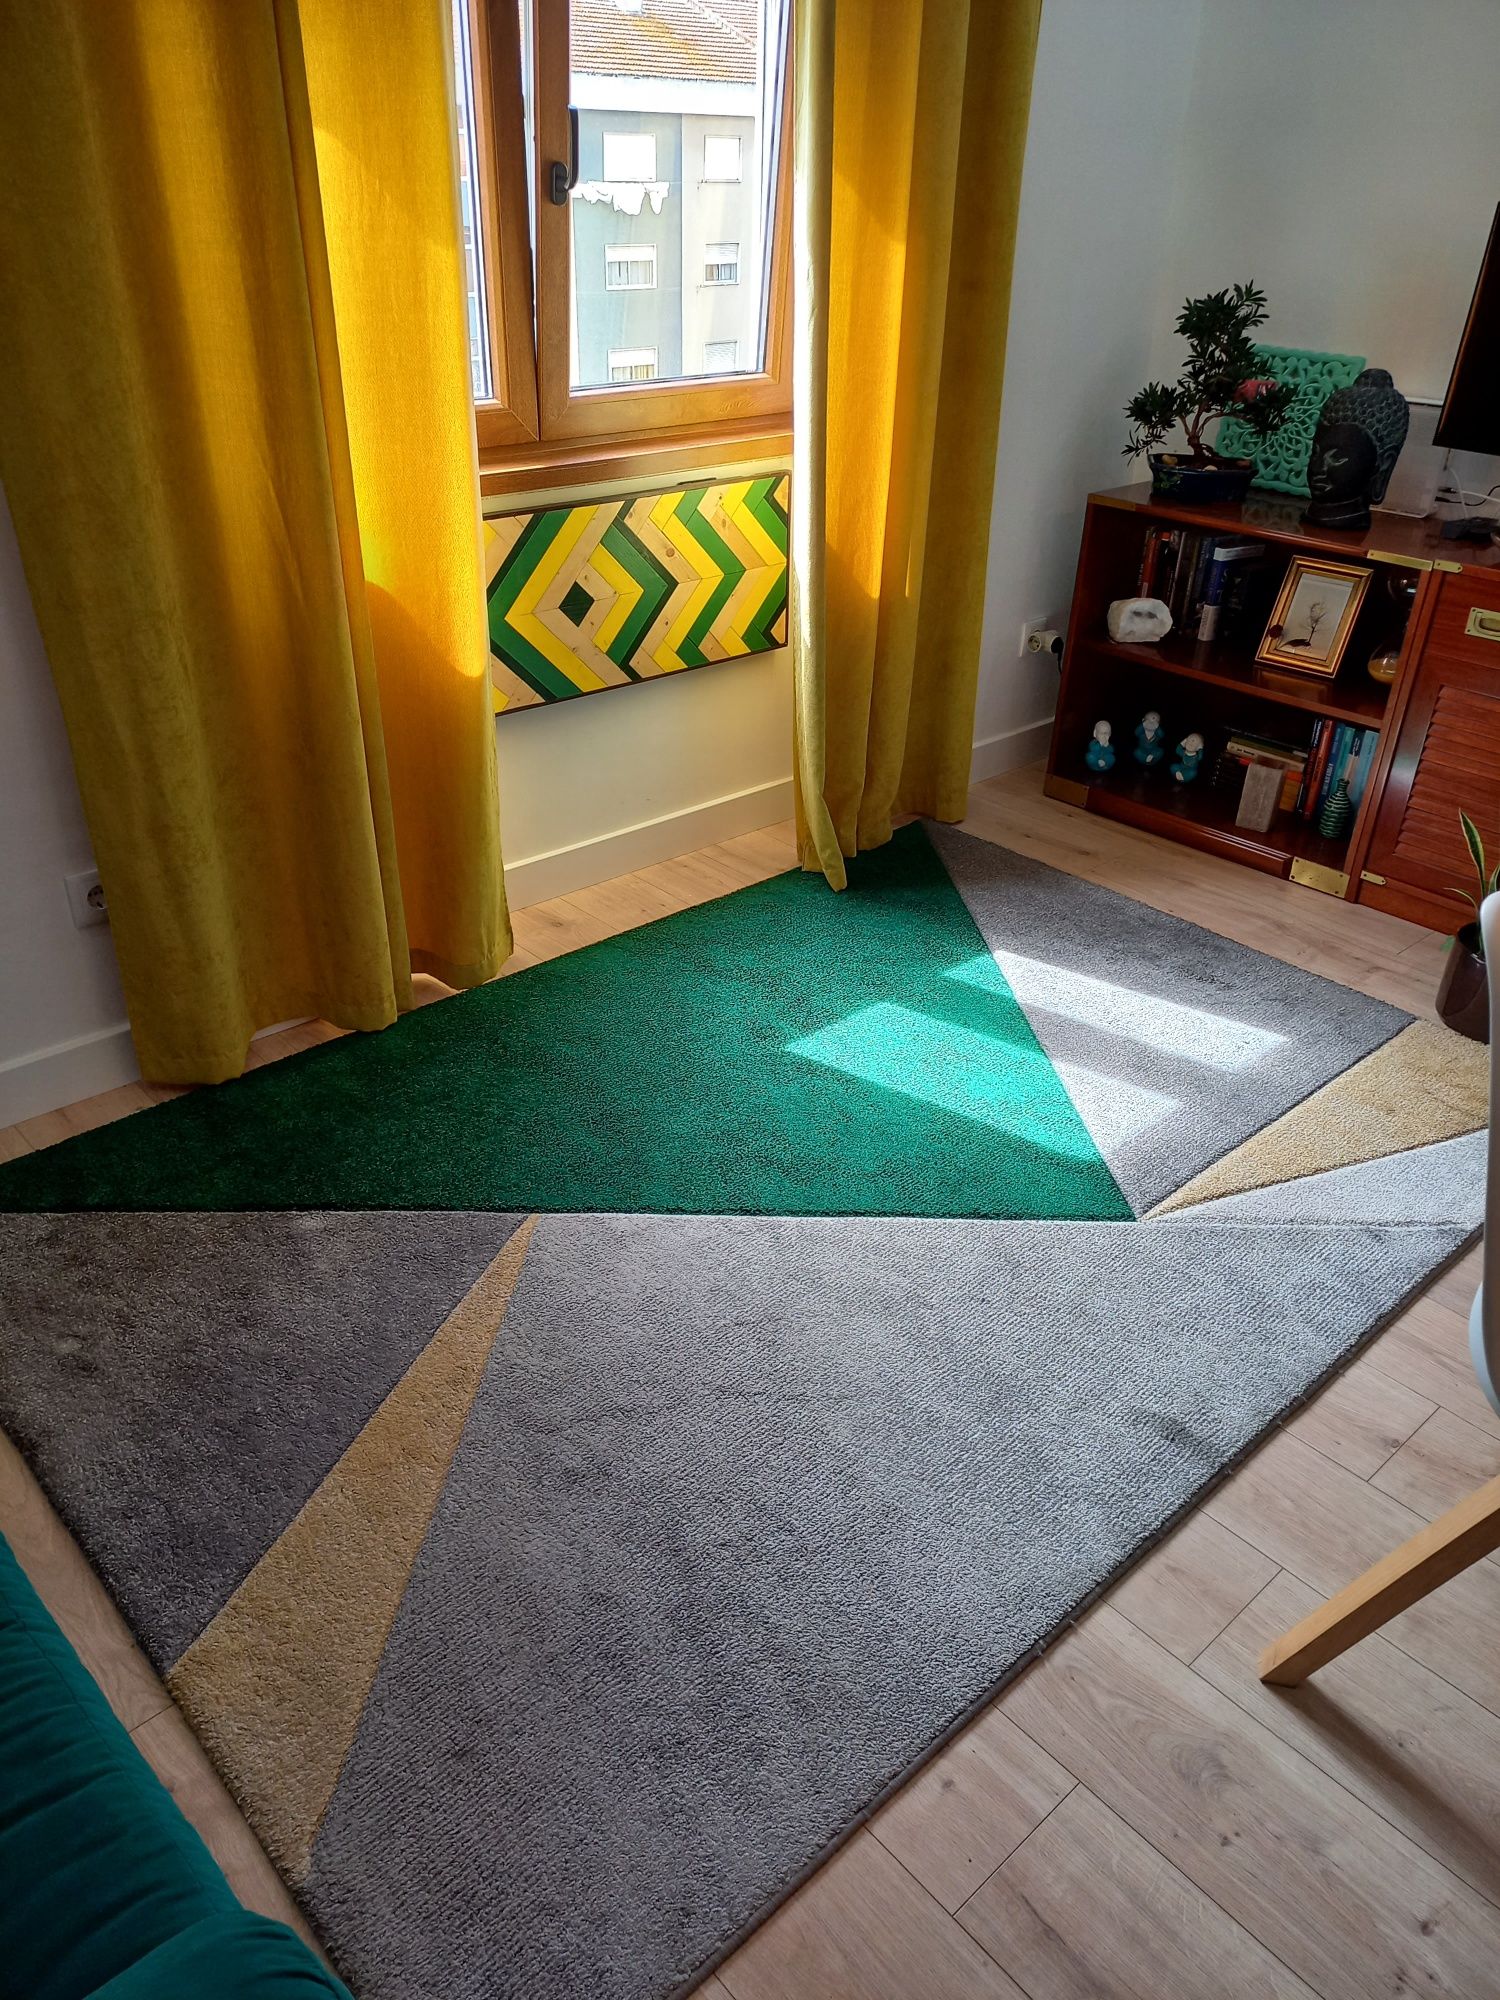 Conjunto decoração verde/amarelo (sofá, carpete, puf, quadro, cortin